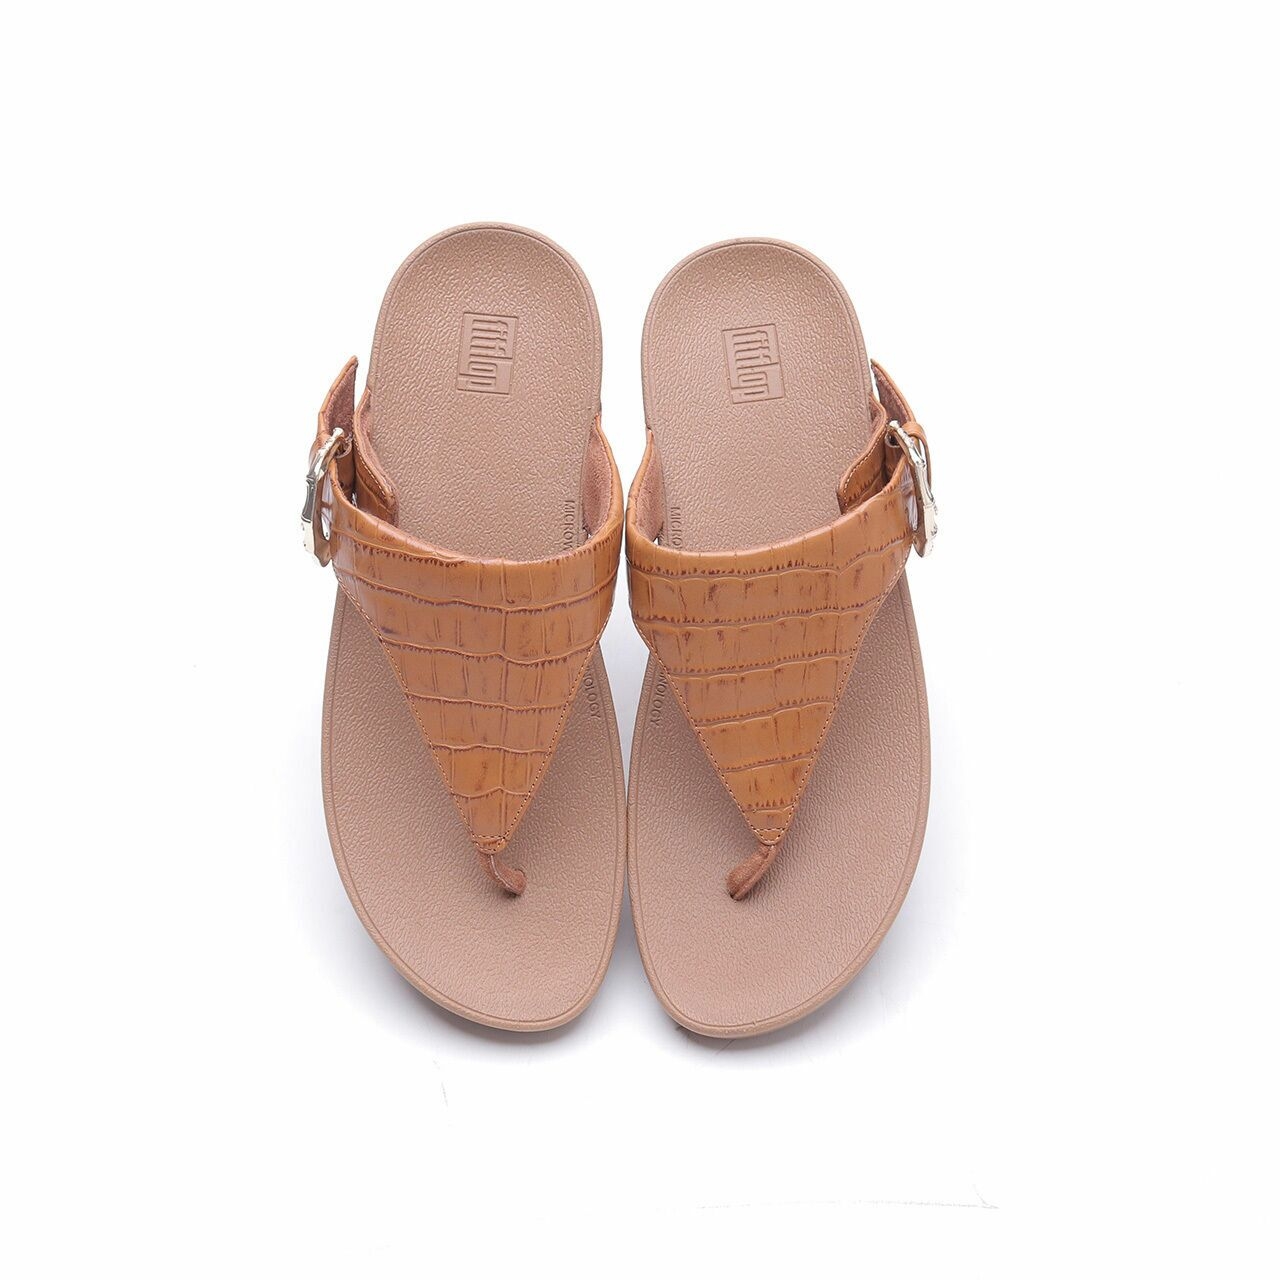 Fitflop Light Tan Lottie Croco Toe-Thongs Sandals